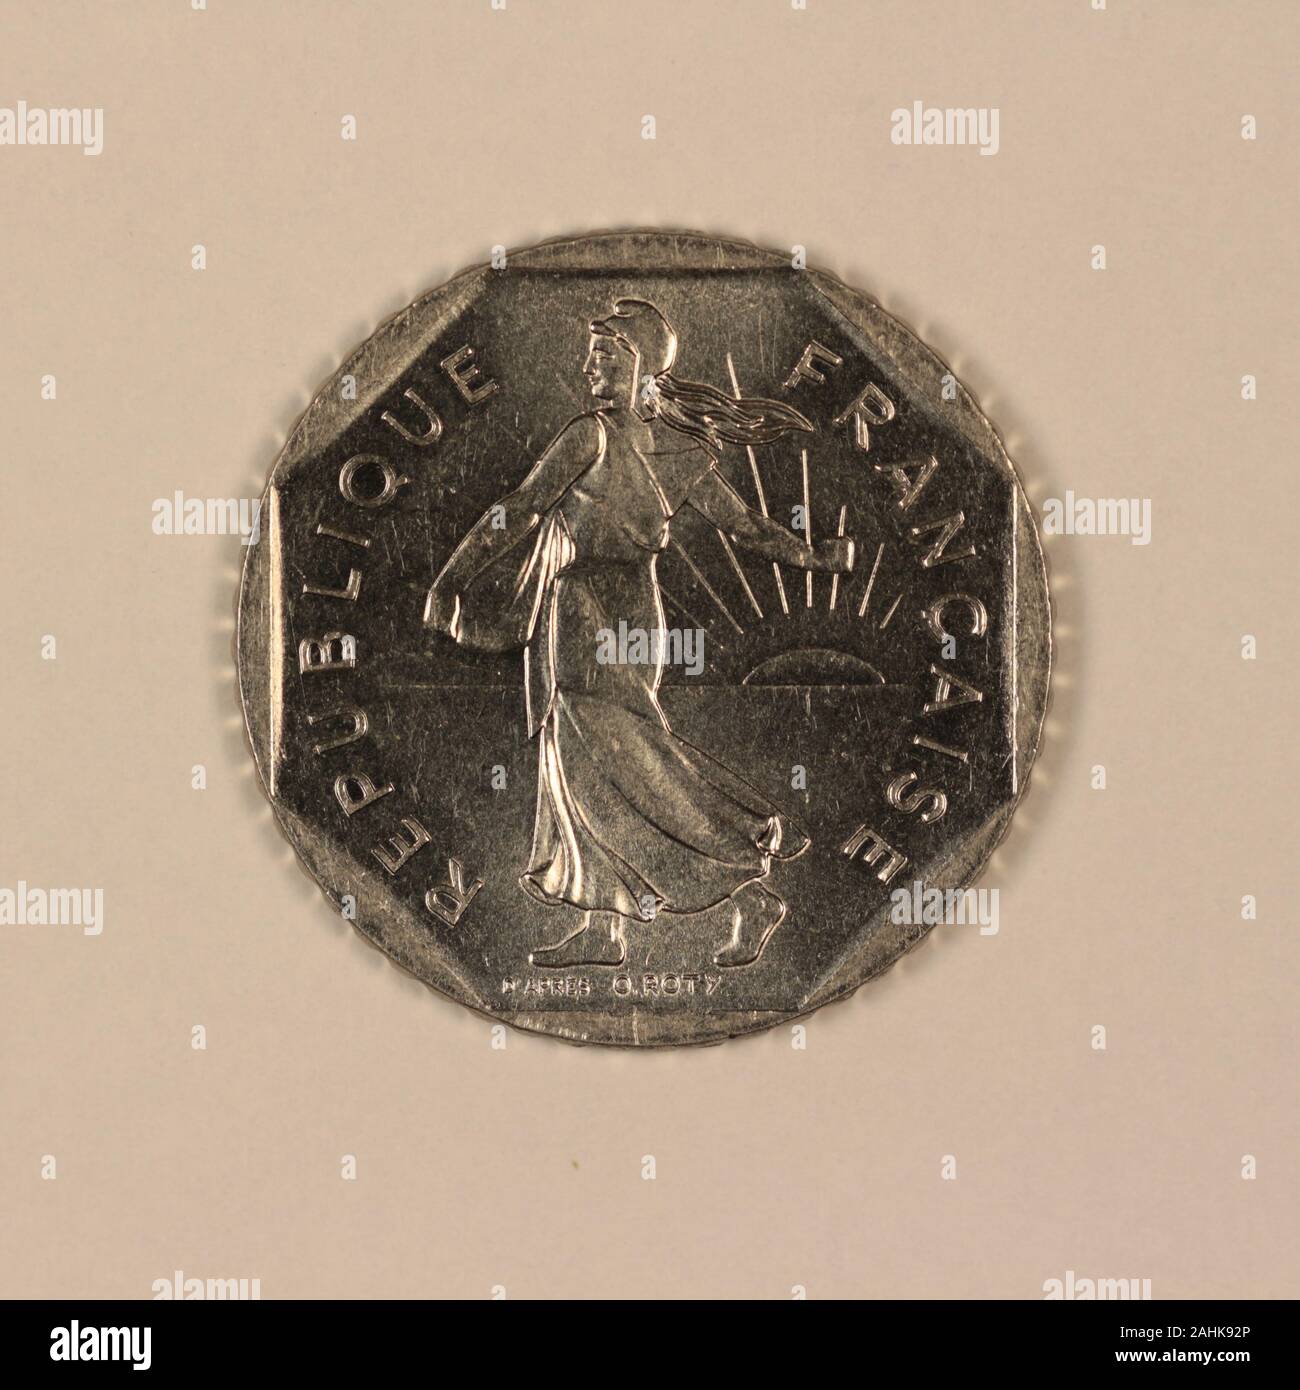 Rückseite einer ehemligen Französischen 2 Francs Münze Stock Photo